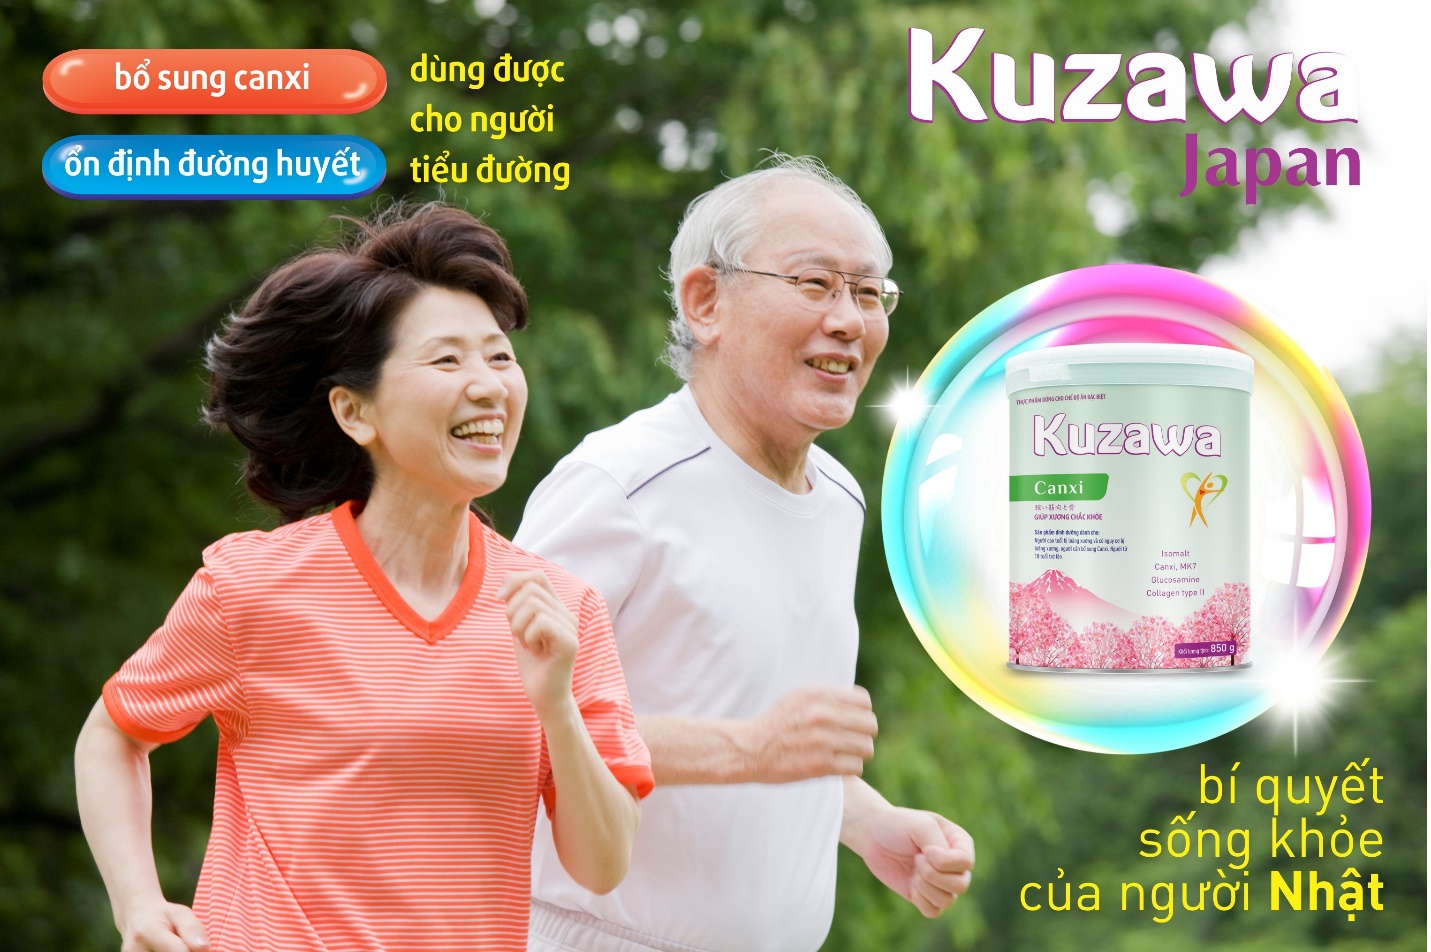 Sữa Kuzawa Sure Gold và Kuzawa Canxi bổ sung Isomalt – Đường dùng cho người tiểu đường - 1